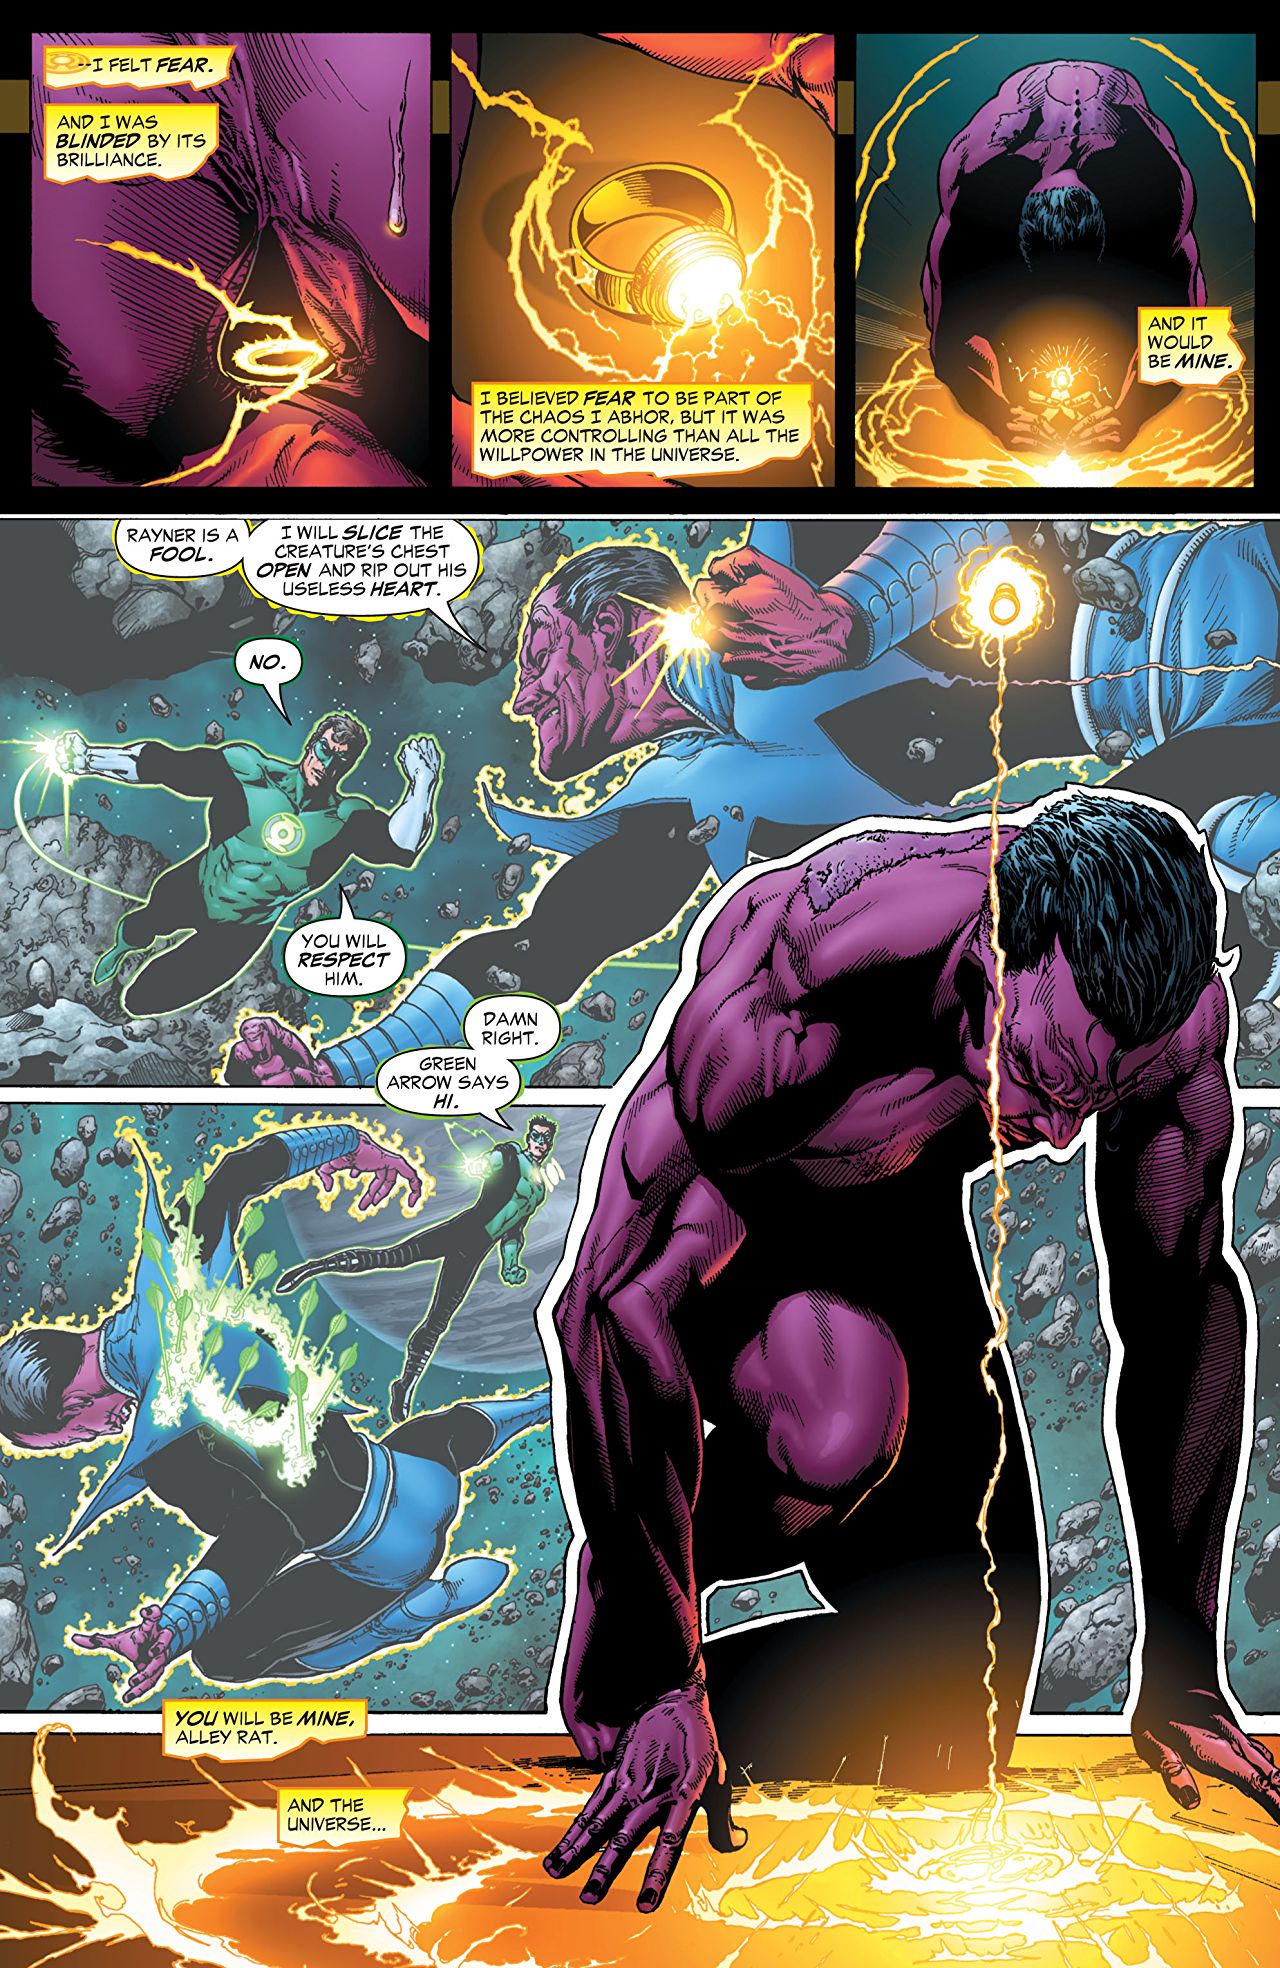 Green Lantern Sinestro Corps War